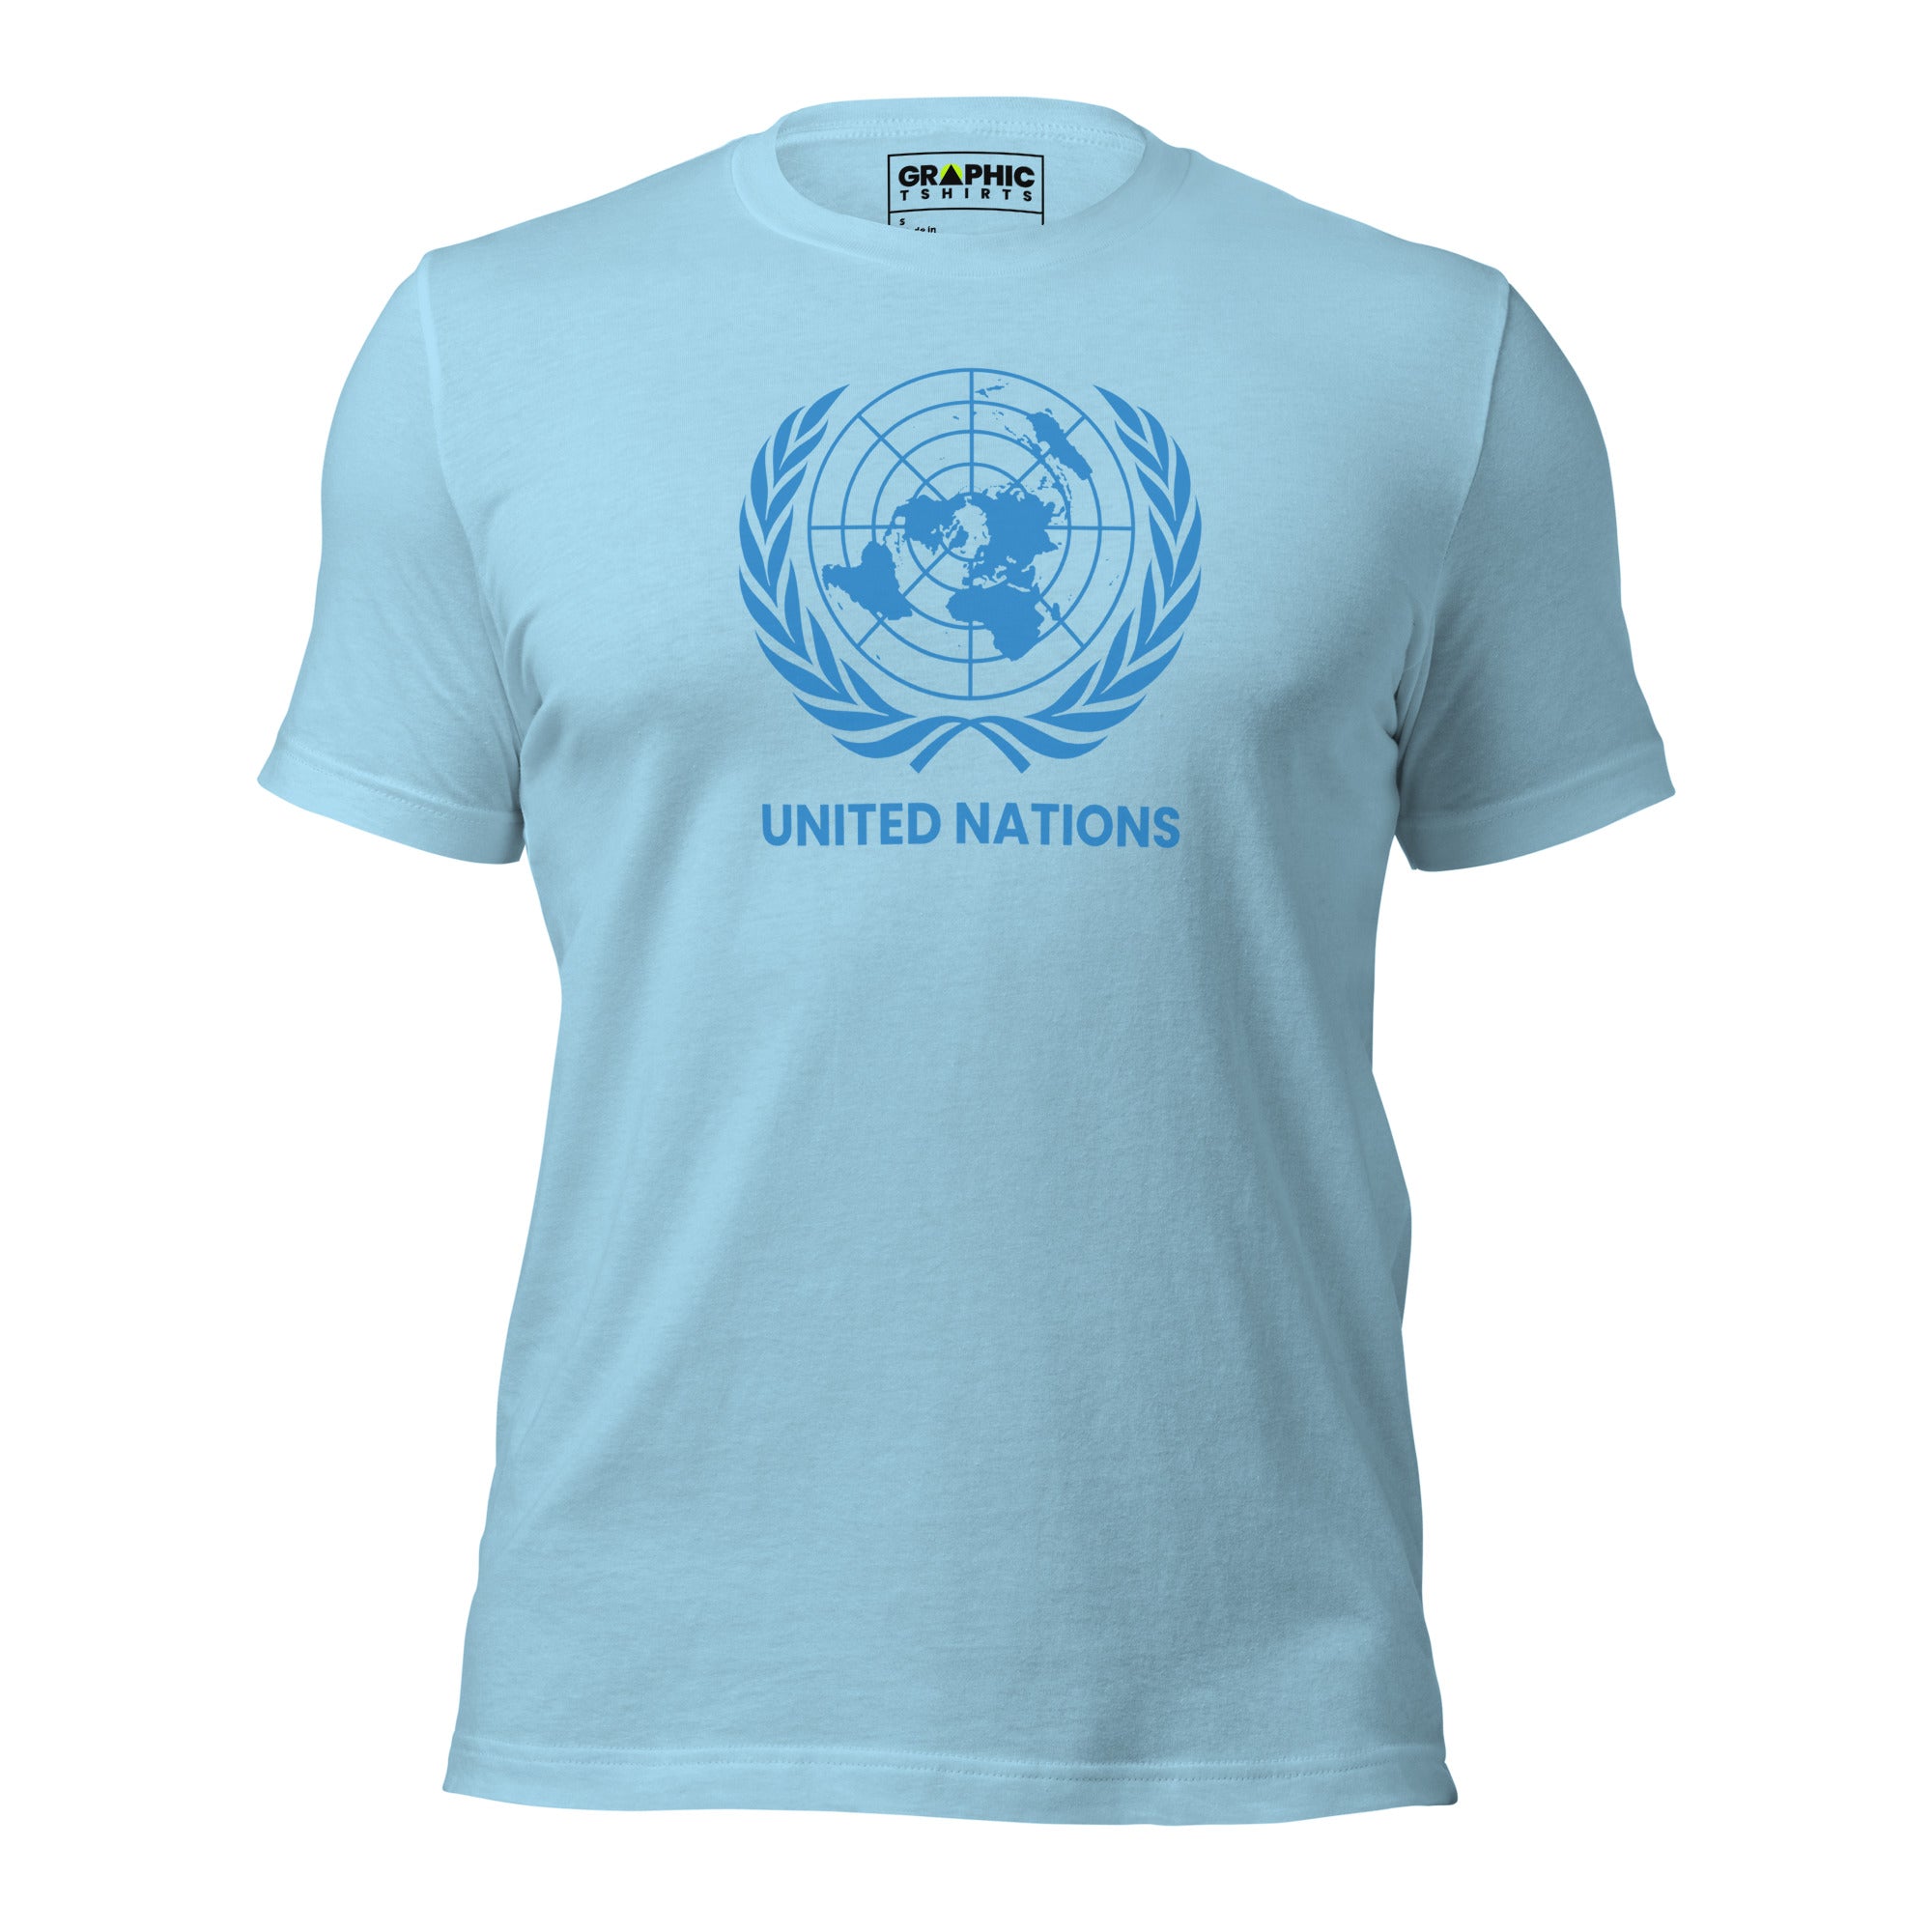 Unisex Crew Neck T-Shirt - United Nations